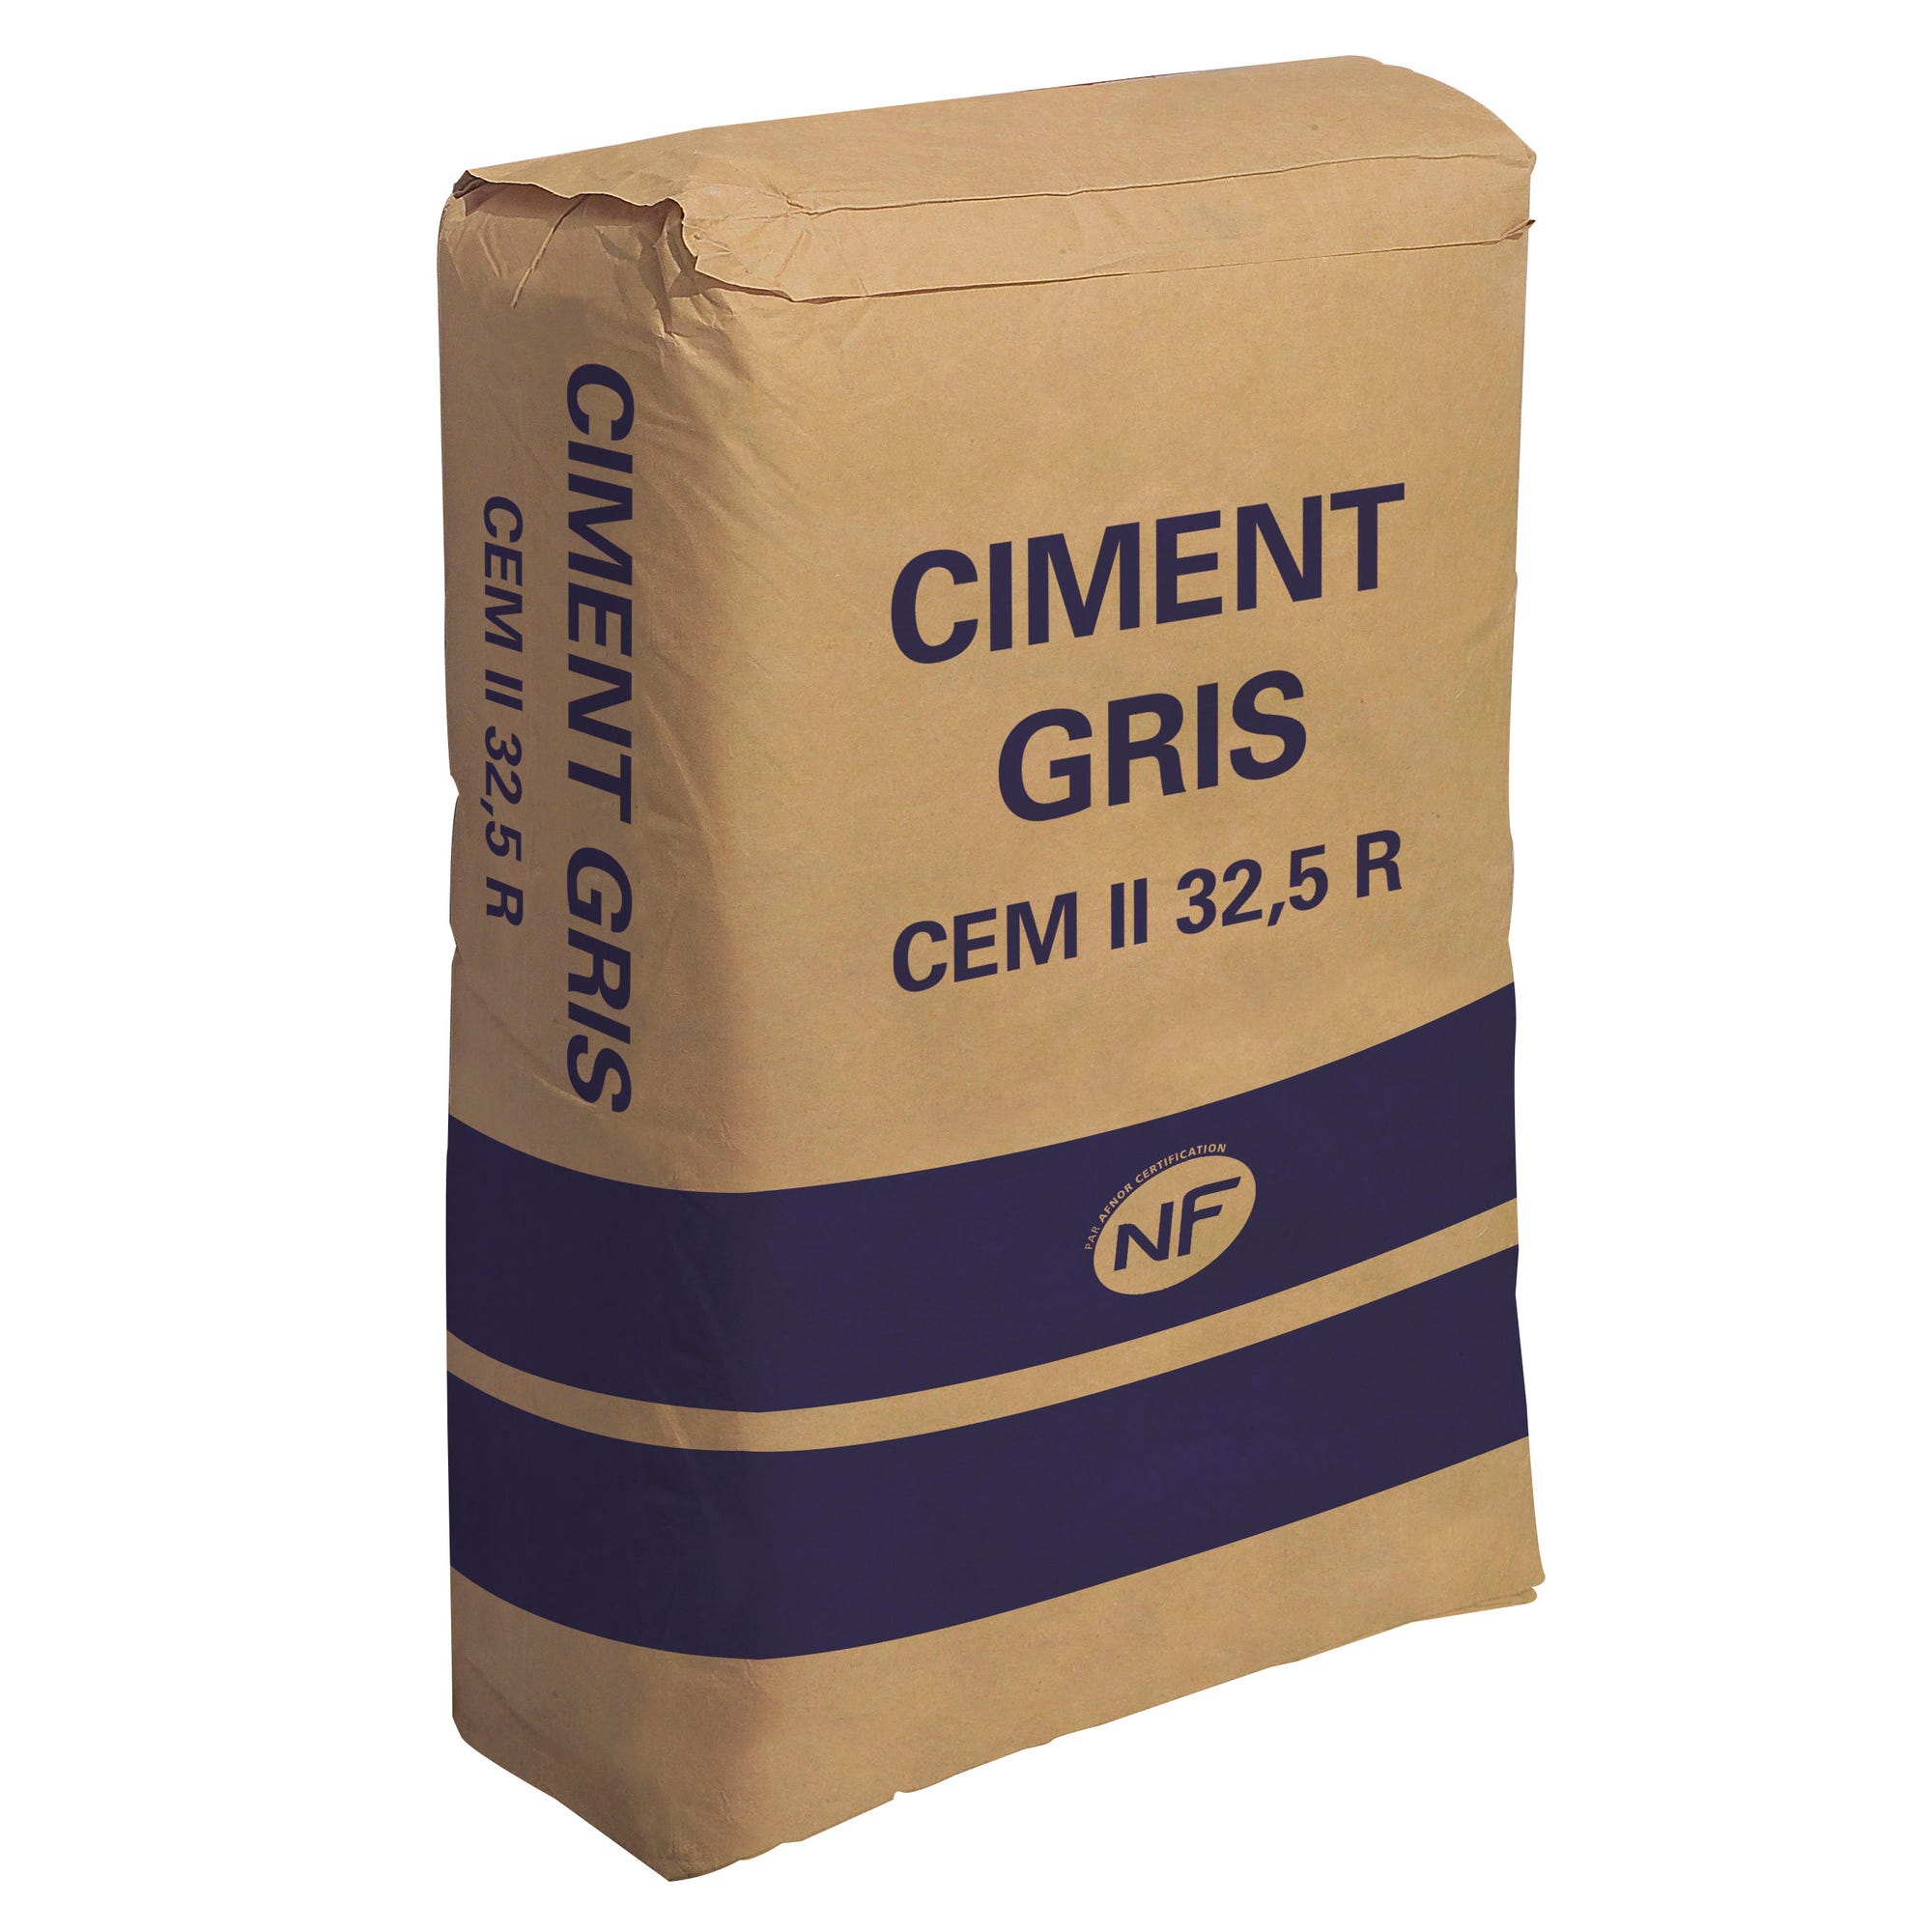 Ciment gris NF 25 kg Triunfo 0